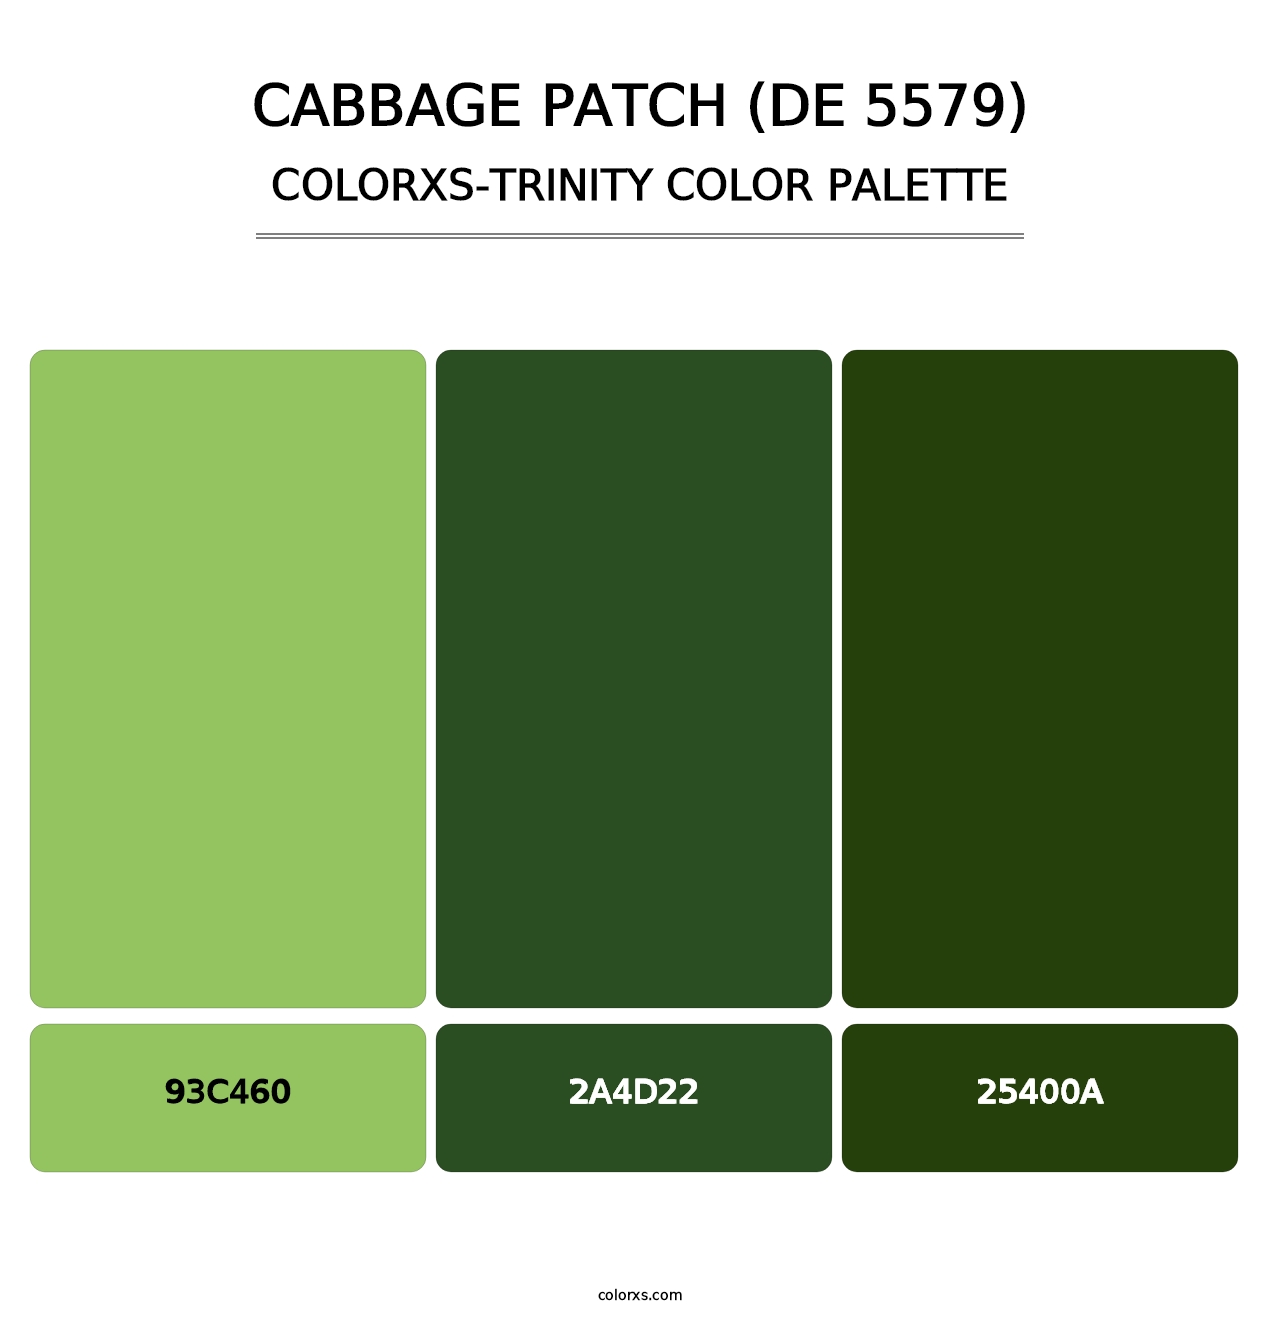 Cabbage Patch (DE 5579) - Colorxs Trinity Palette